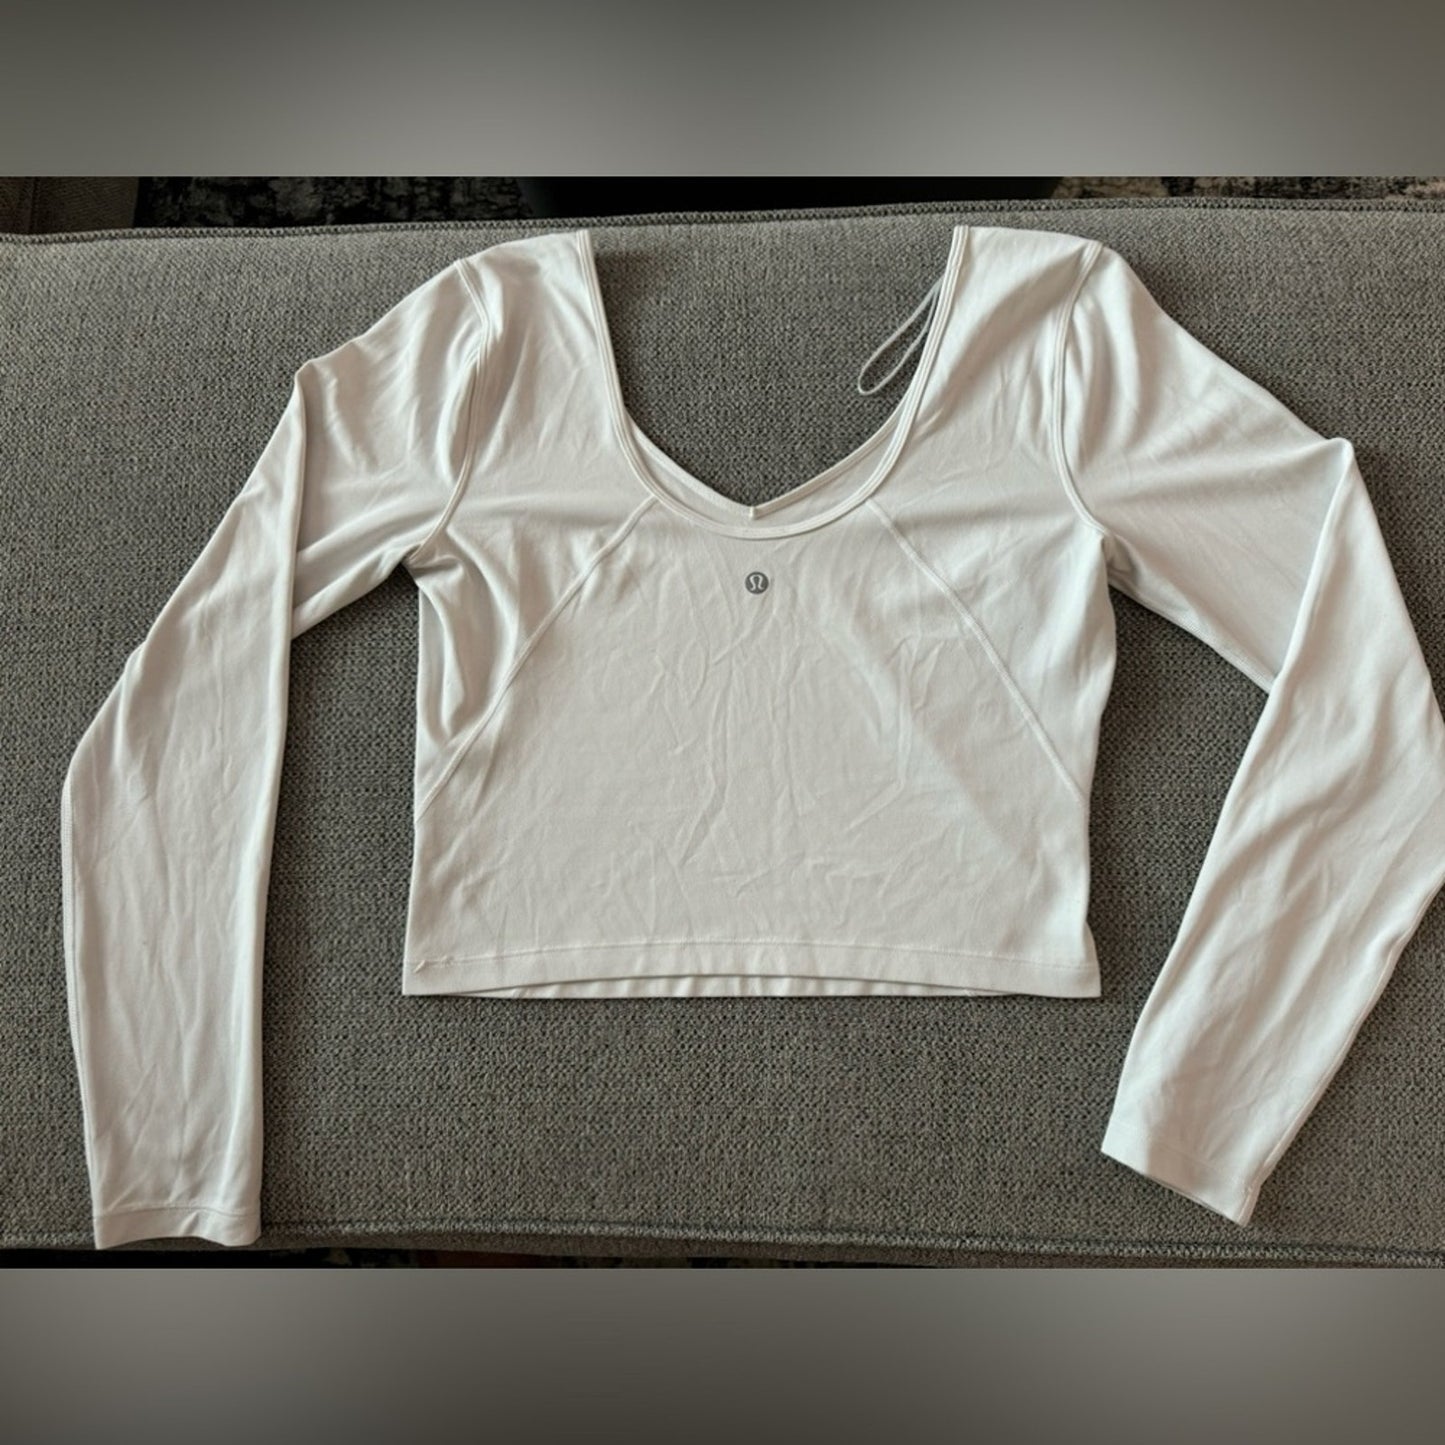 Pre-Owned Size 8 Lulu Lemon Align Long Sleeve White Shirt